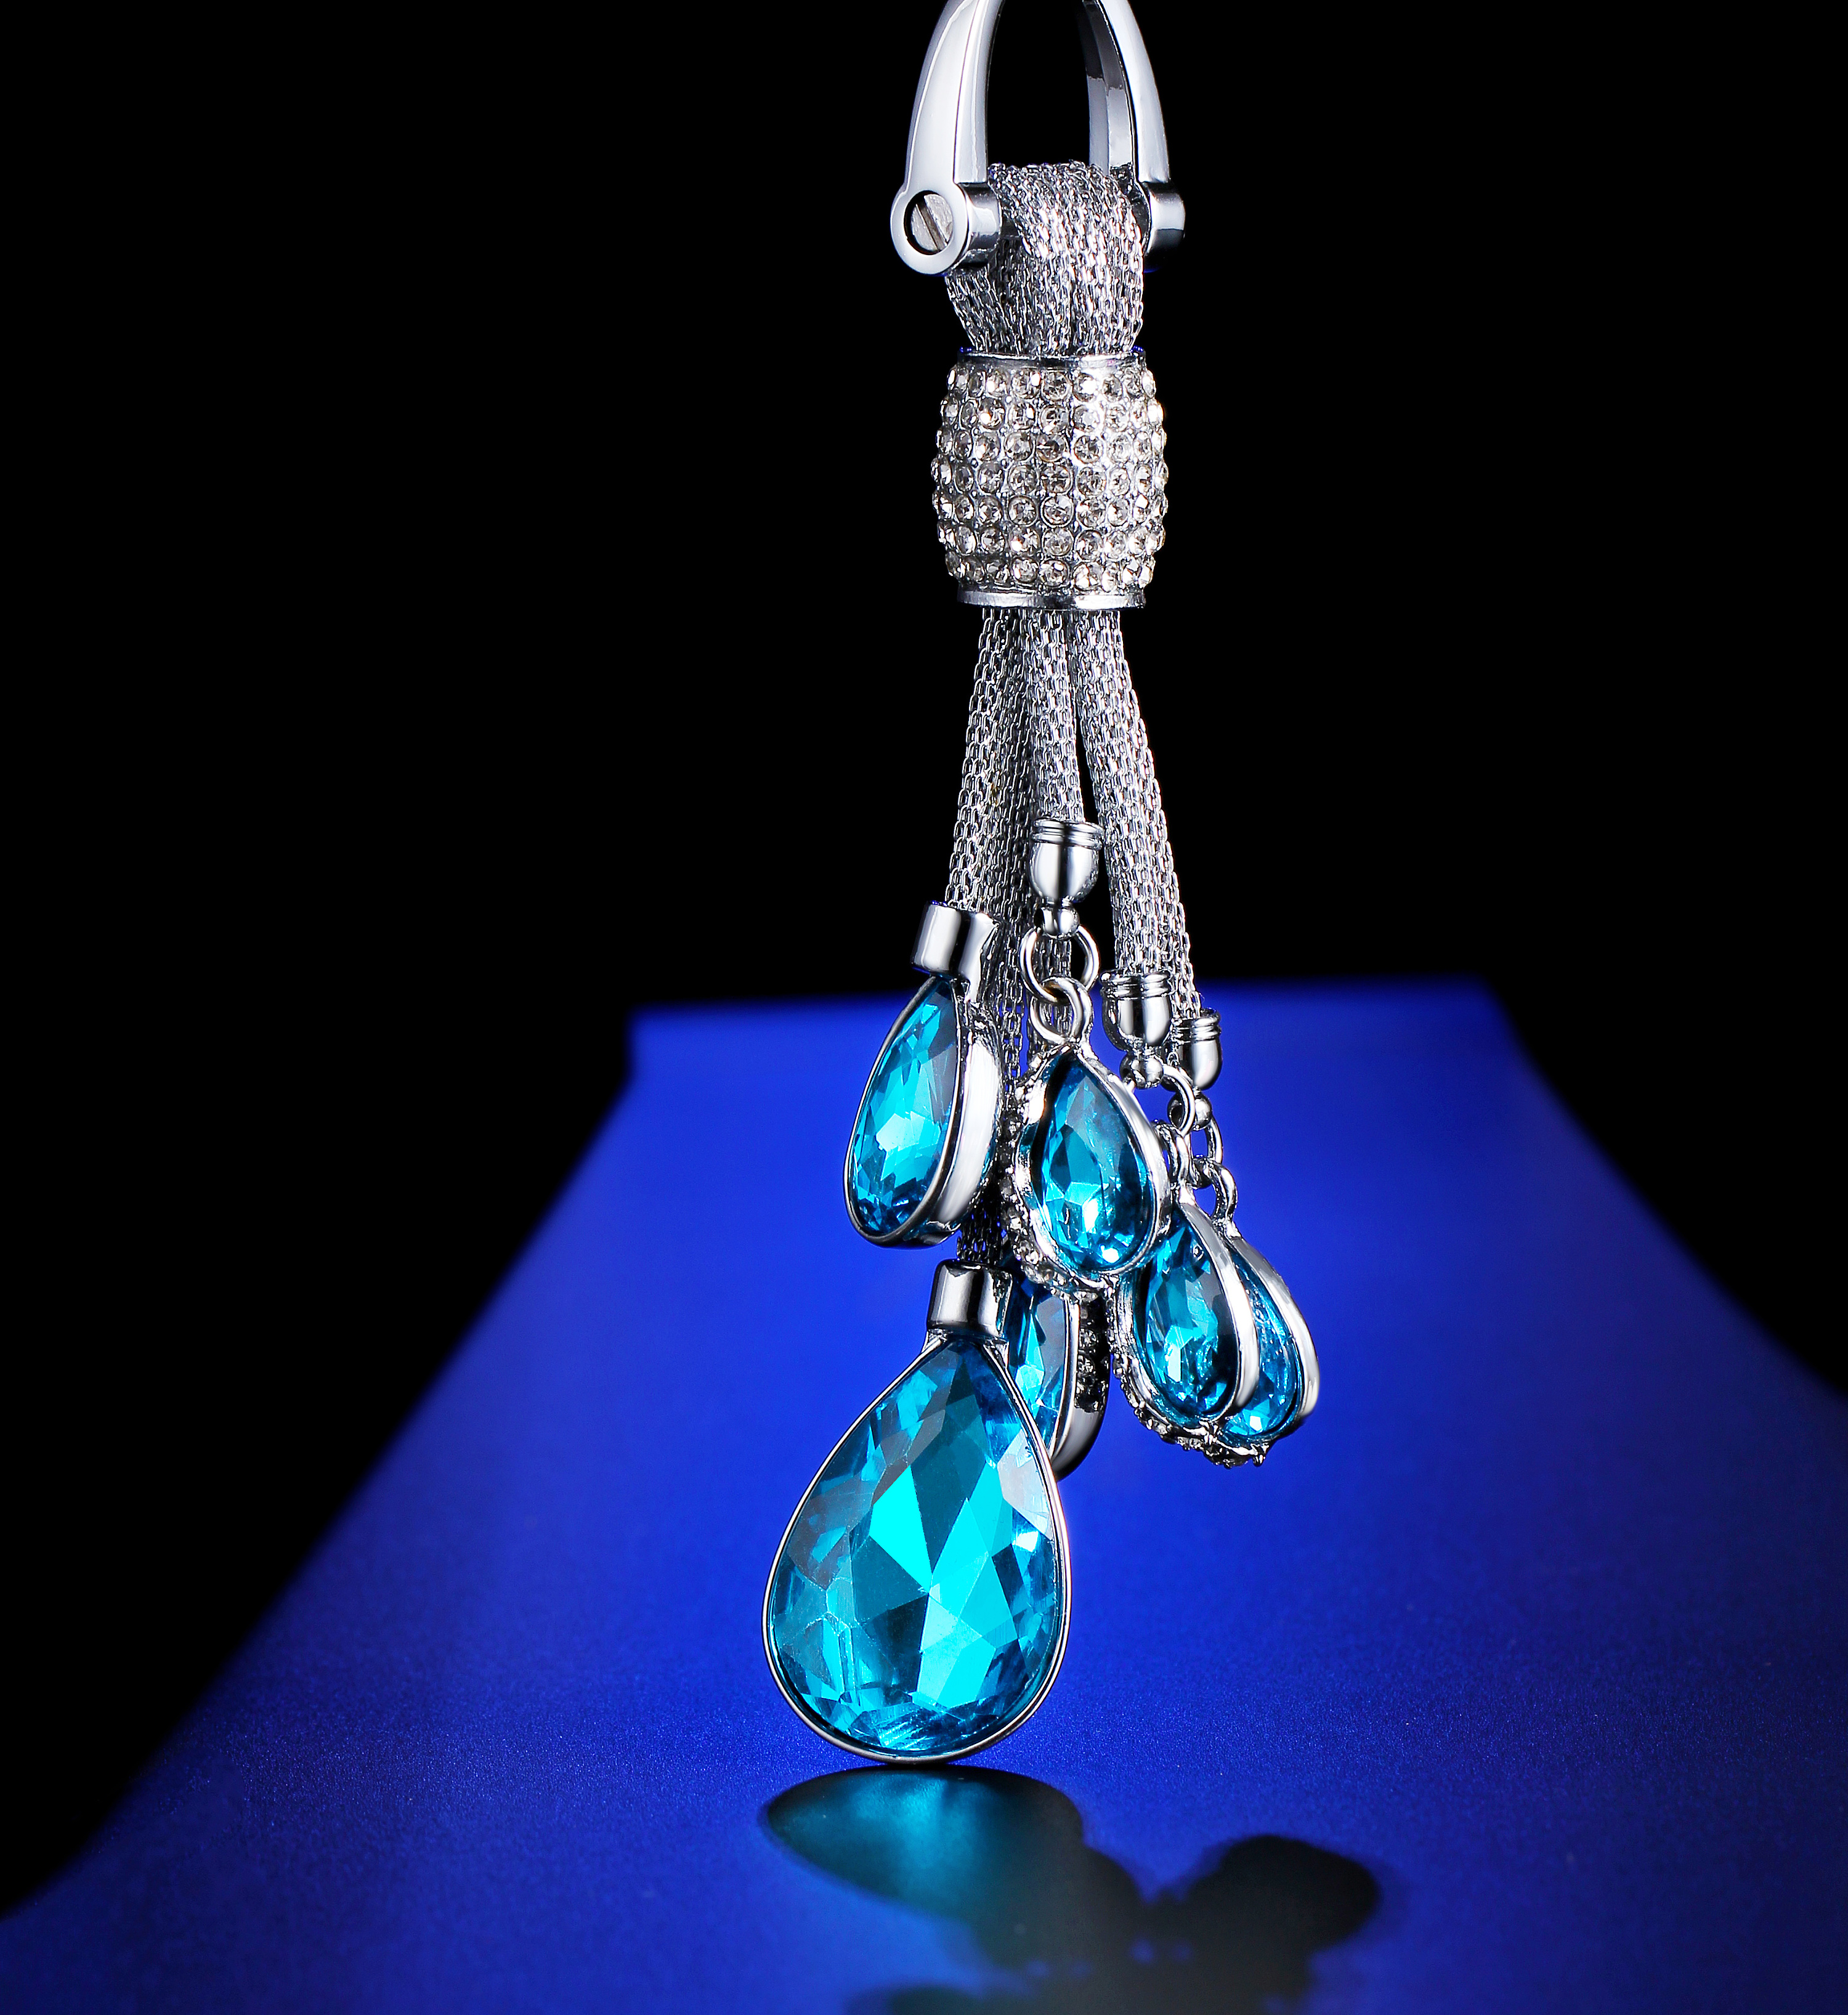 新款 创意宝石折叠炫彩手机支架 透明钻石纹手机可爱创意-阿里巴巴